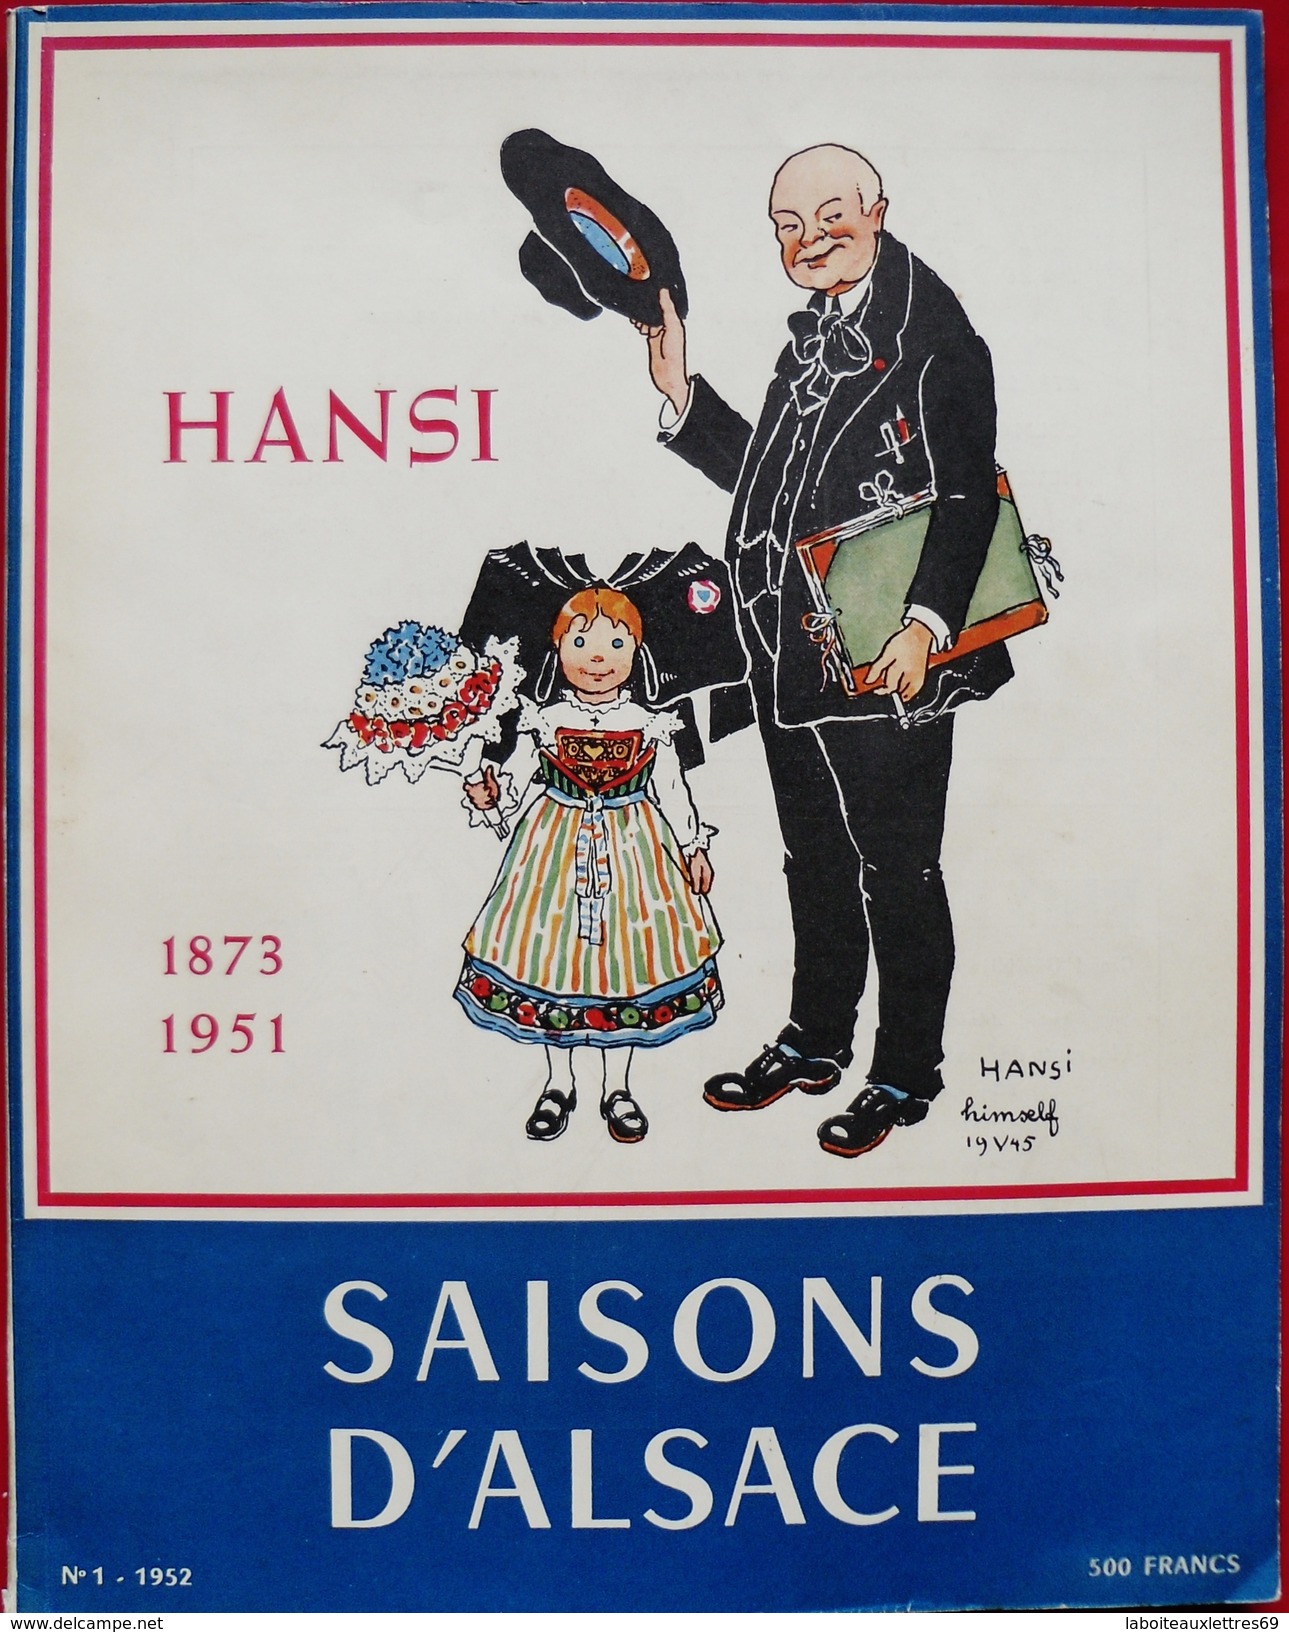 REVUE SAISONS D'ALSACE - HOMMAGE A HANSI 1873-1951 (J.J WALTZ) - N°1 -1952 HIVER - History